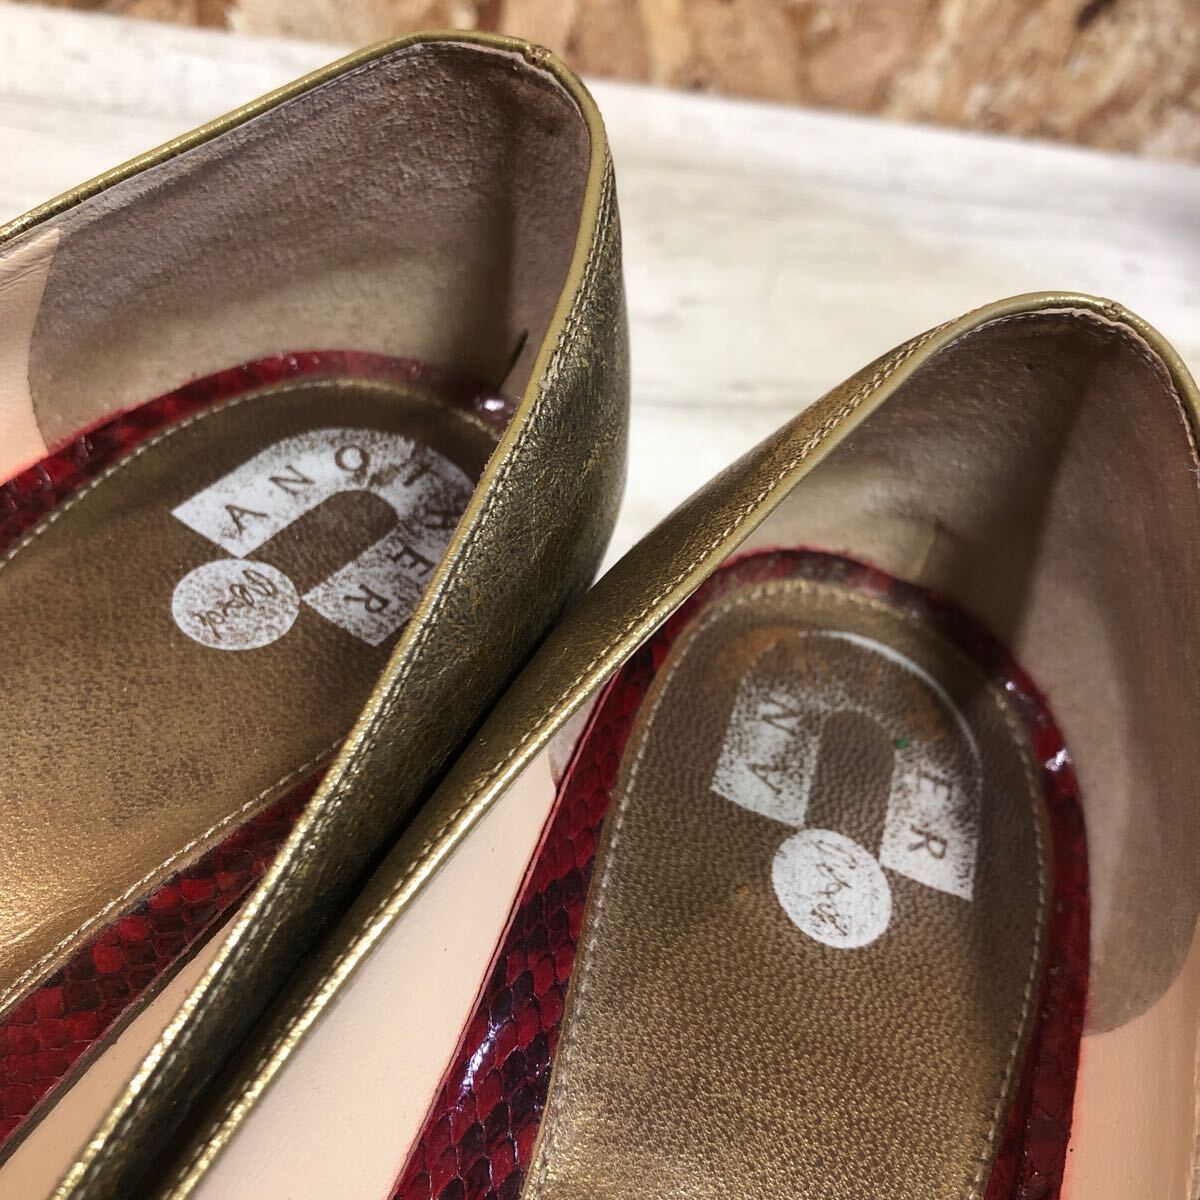 ANOTHER туфли-лодочки женский каблук Gold размер 37 сделано в Японии 24.0.? модный Sagawa Express соответствие .